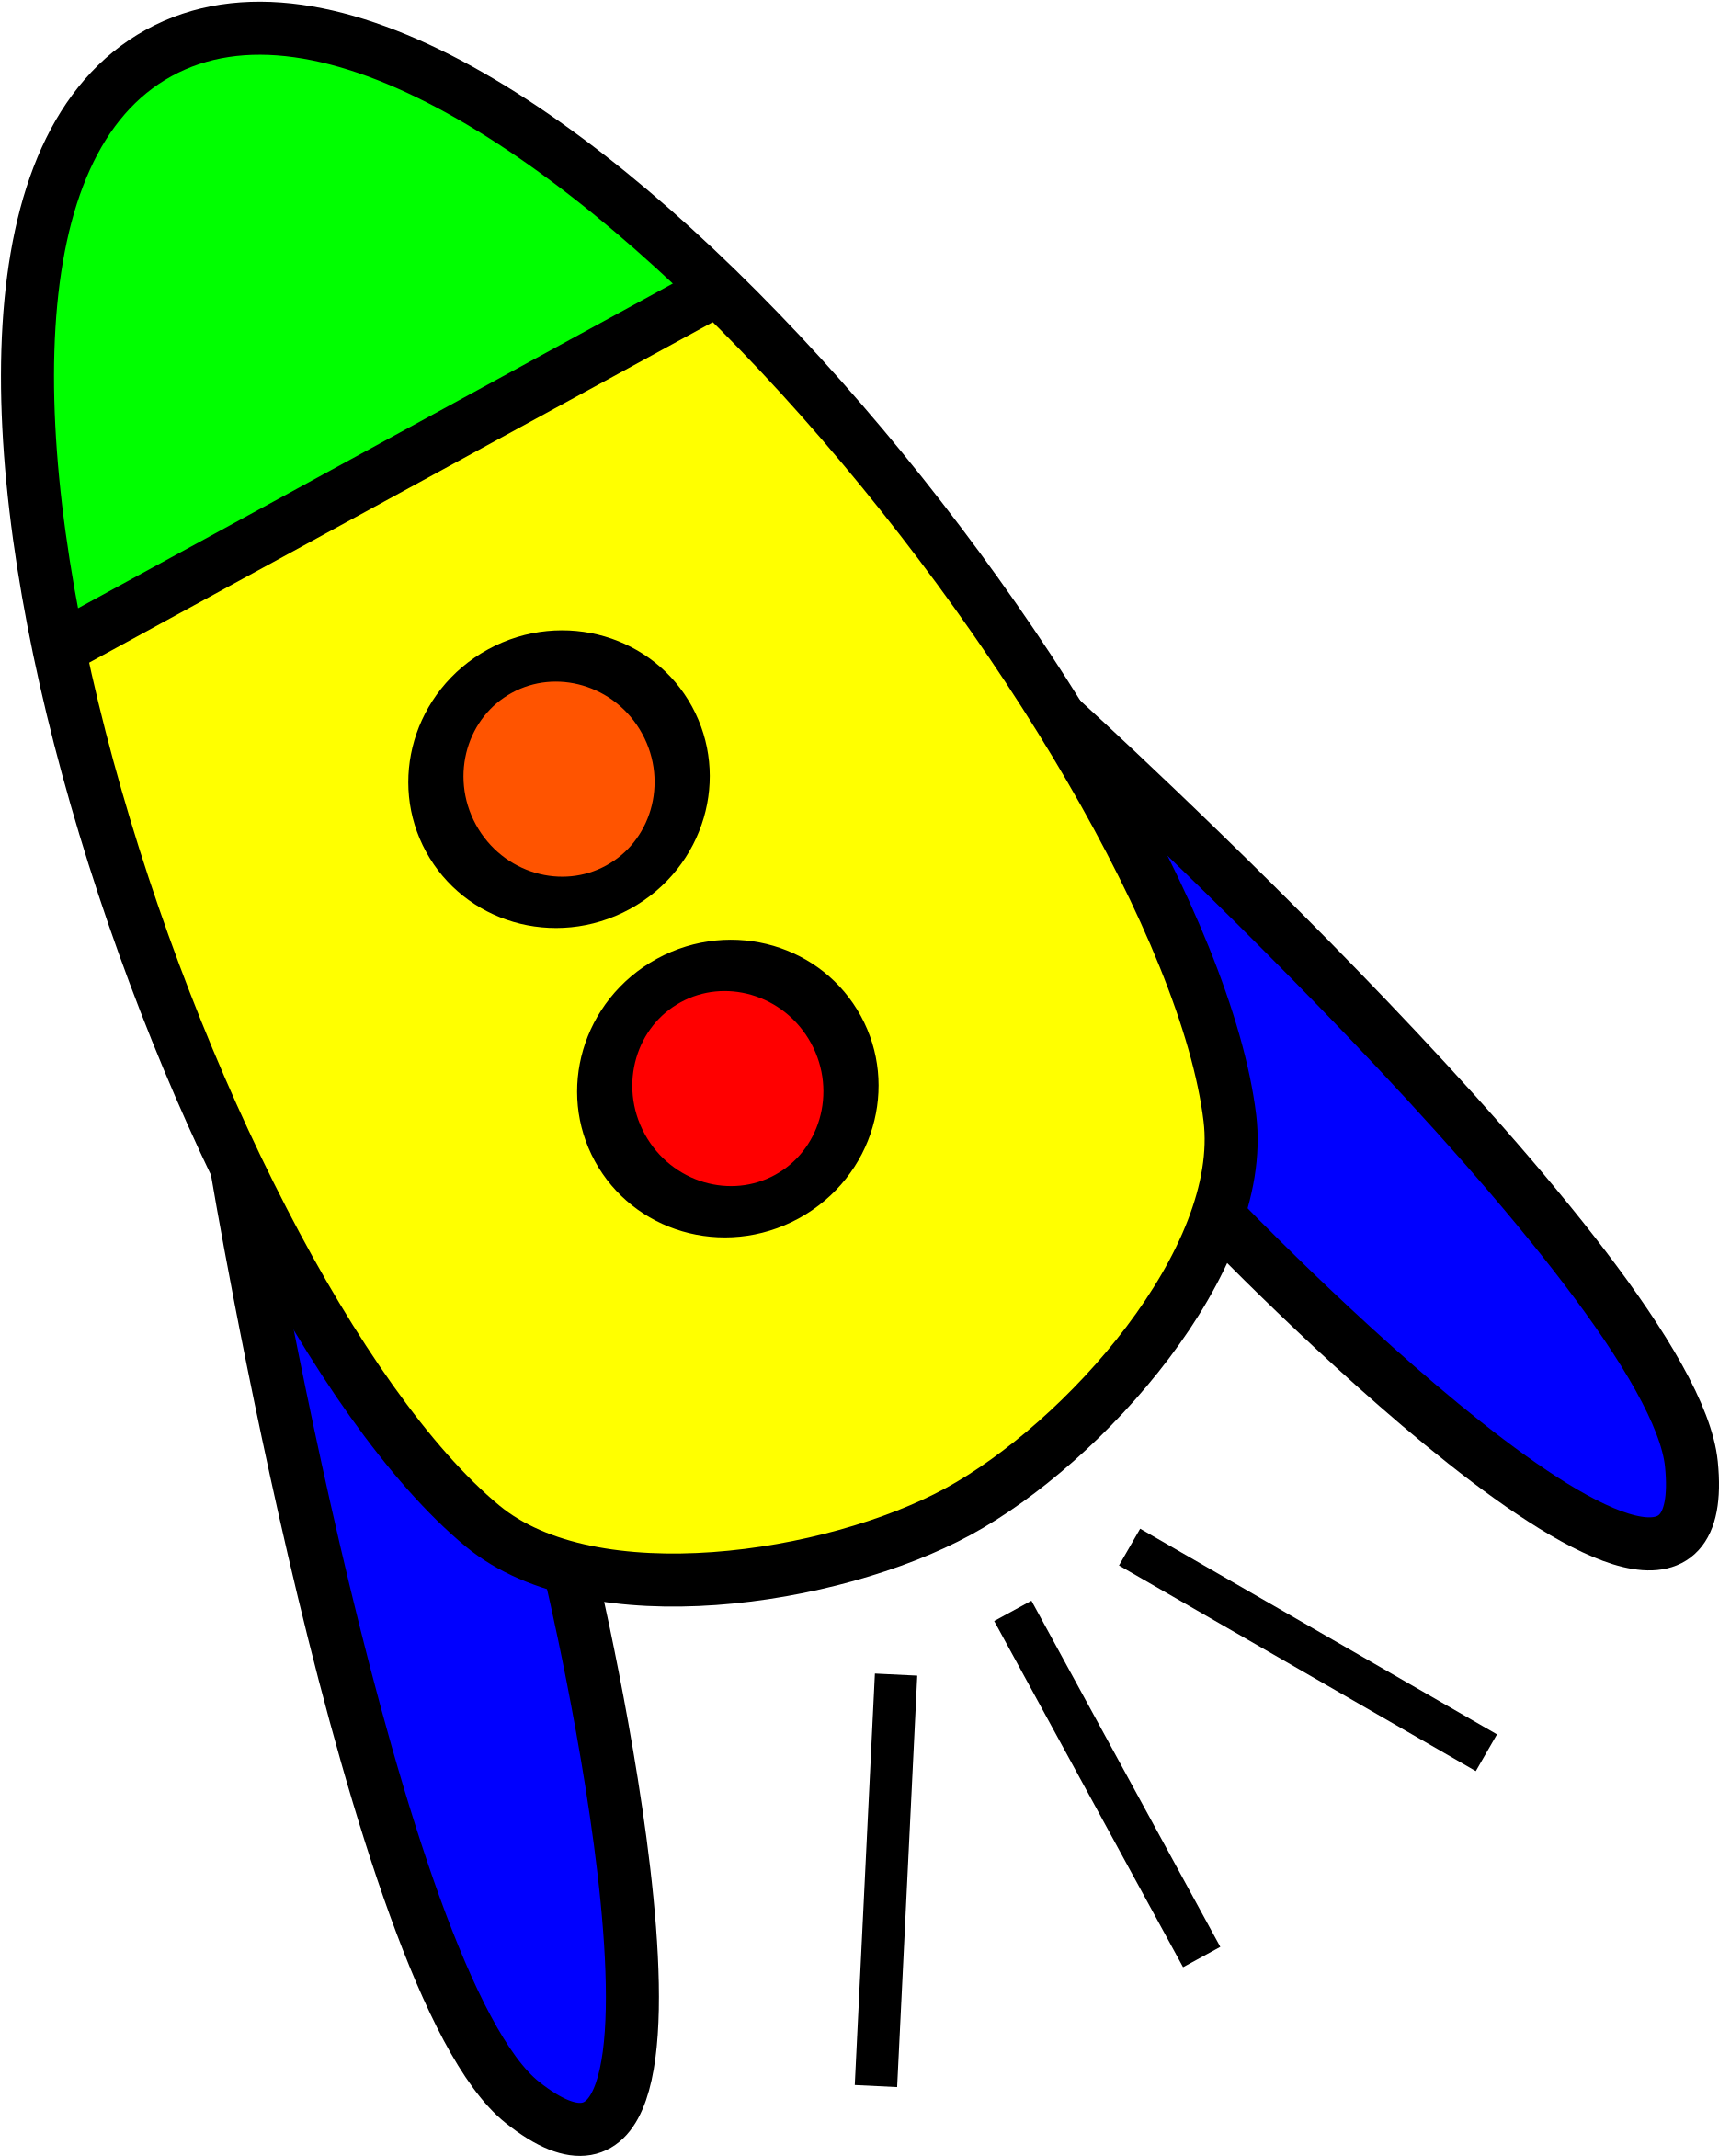 Цветная ракета. Ракета для детей. Ракета рисунок. Изображение ракеты для детей. Космическая ракета картинки для детей.